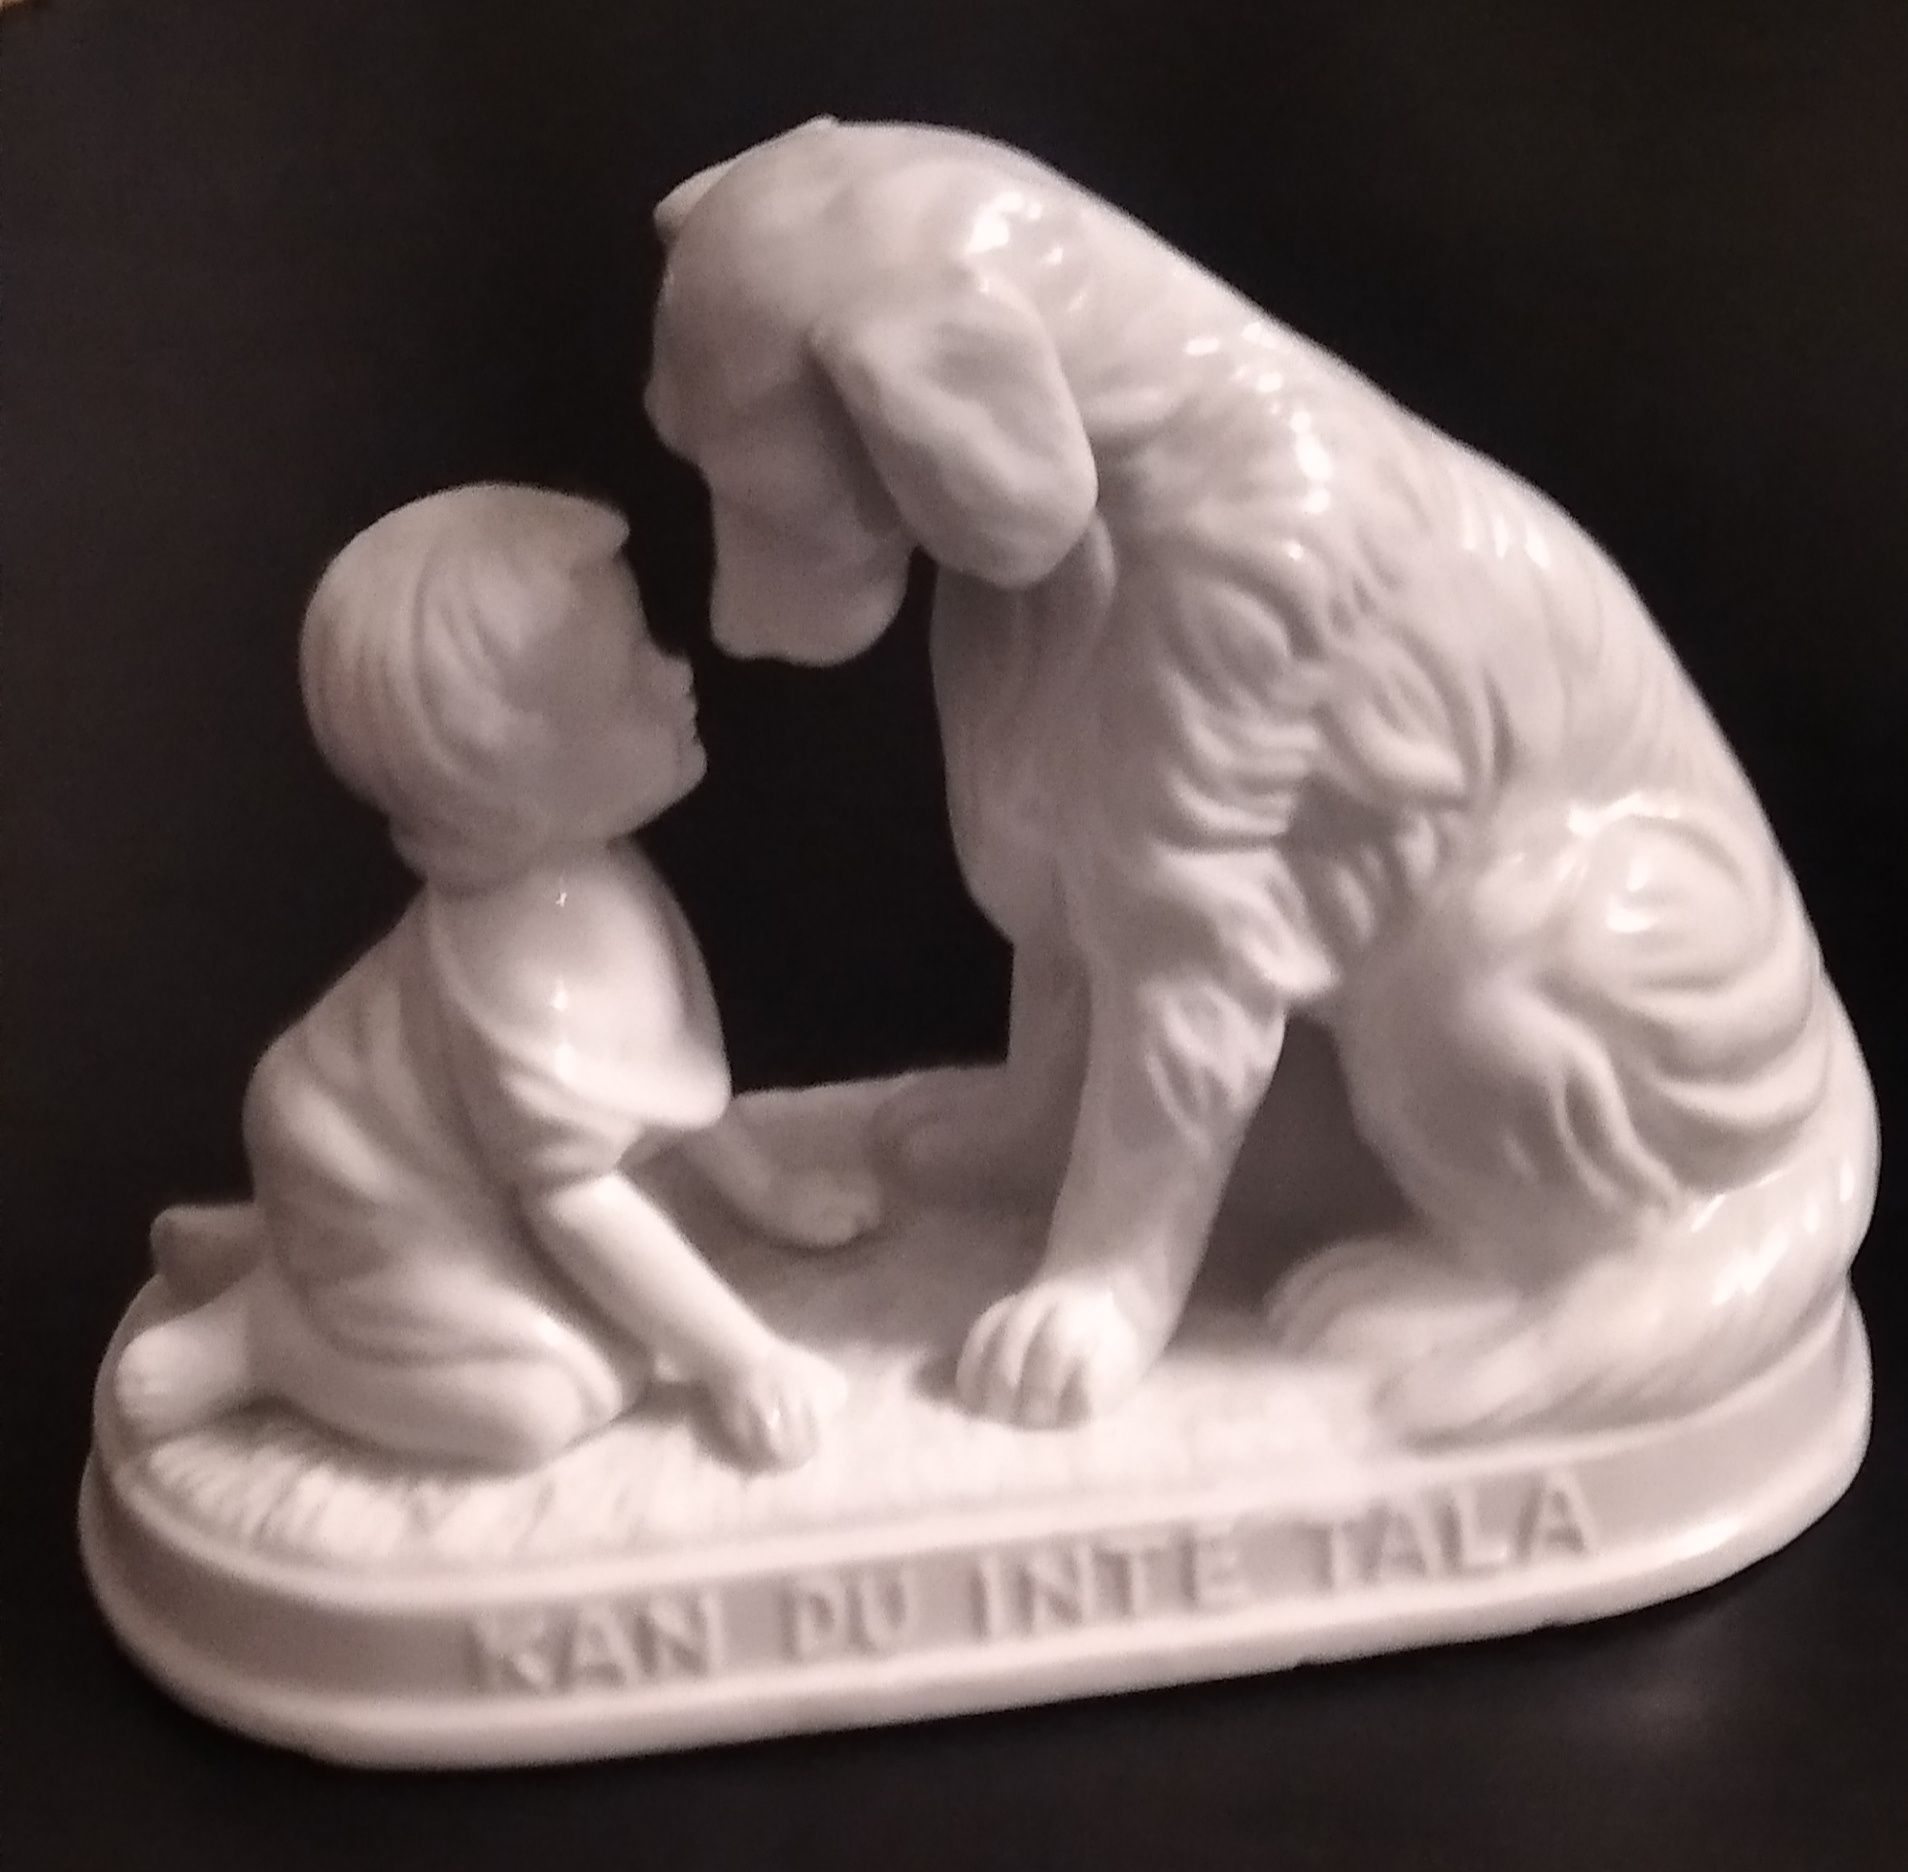 Antyczny szwedzki plaster pies i figurka dziecka "Kan du Inte Tala"